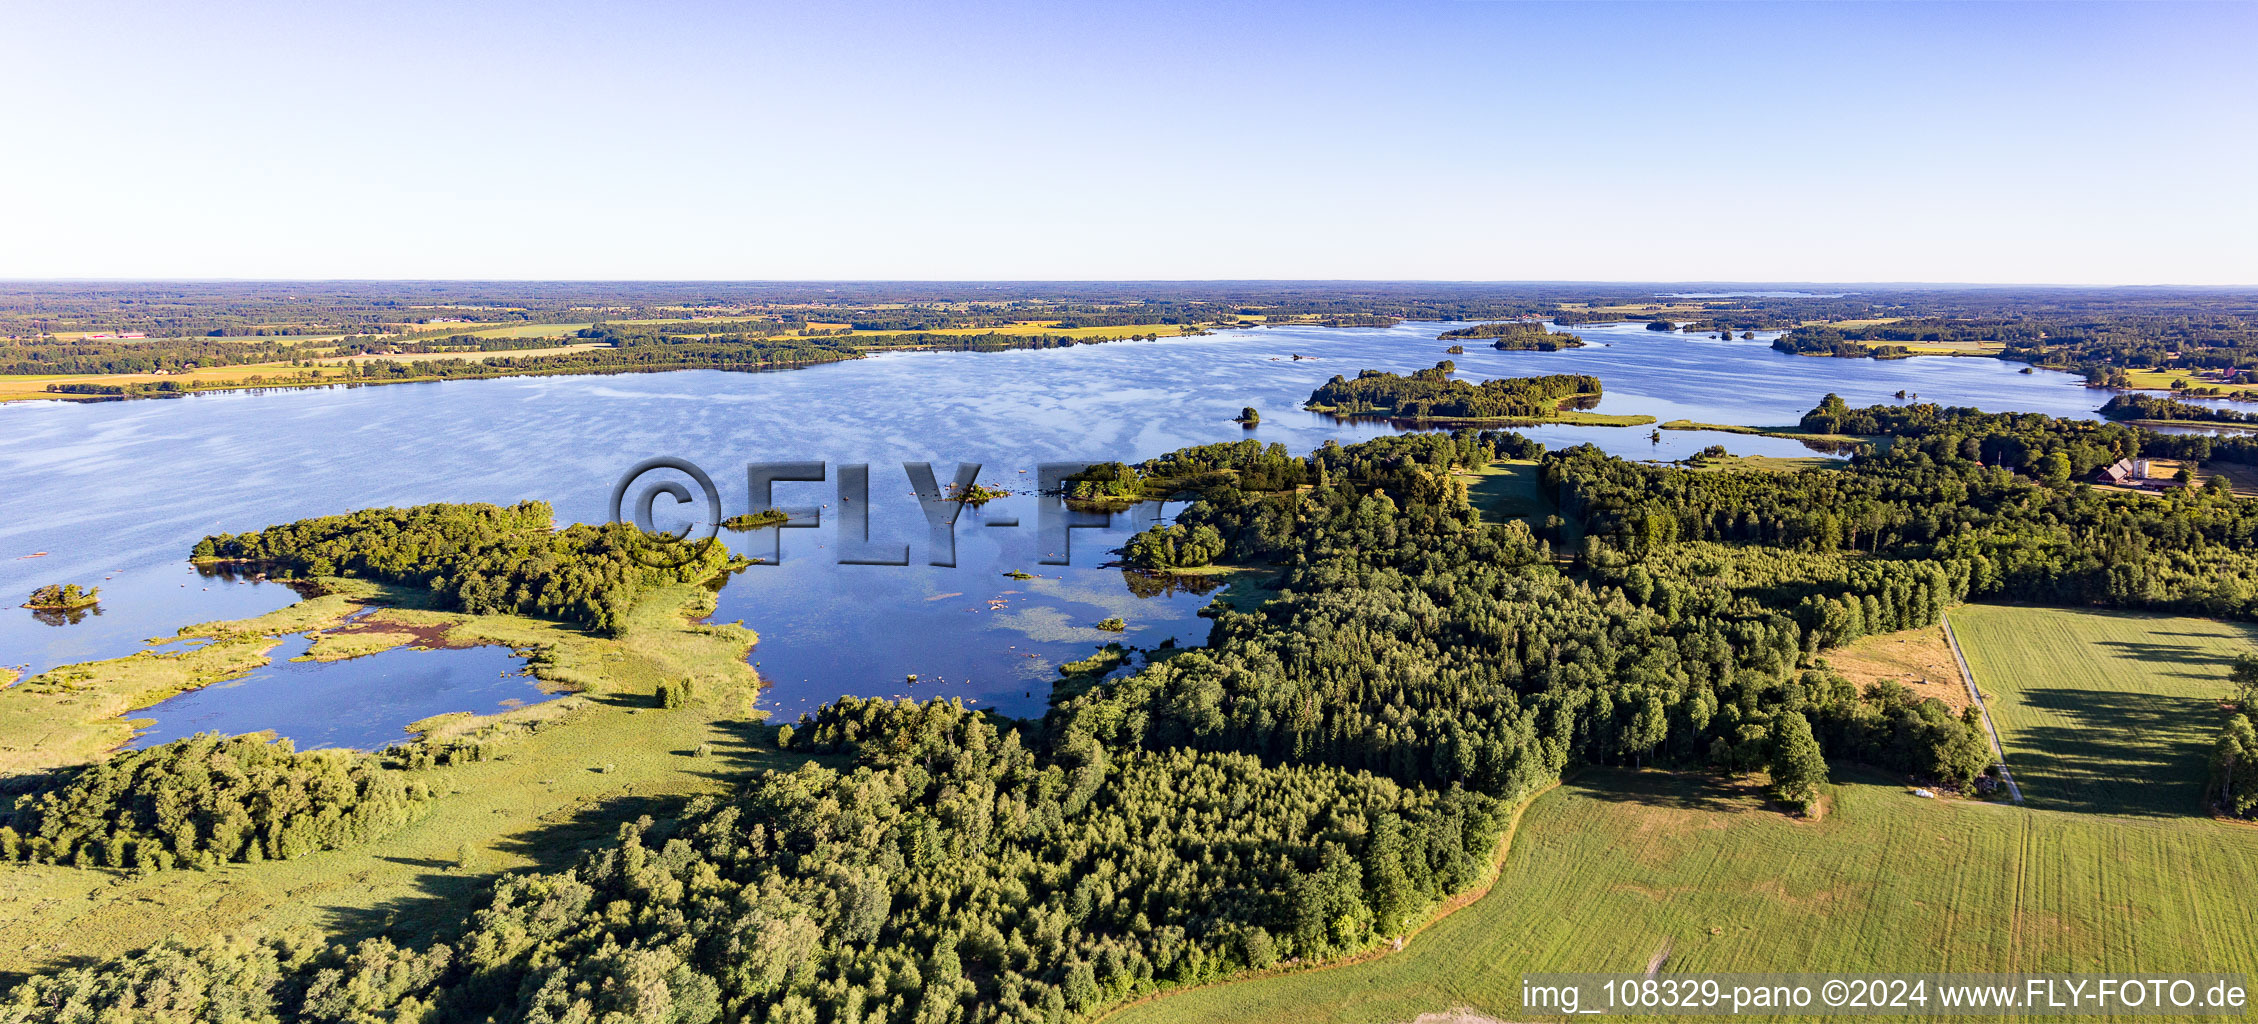 Waldgebiete an Uferbucht im moorfarbenen Åsnen-See bei Vrankunge in Småland in Kronobergs län, Schweden